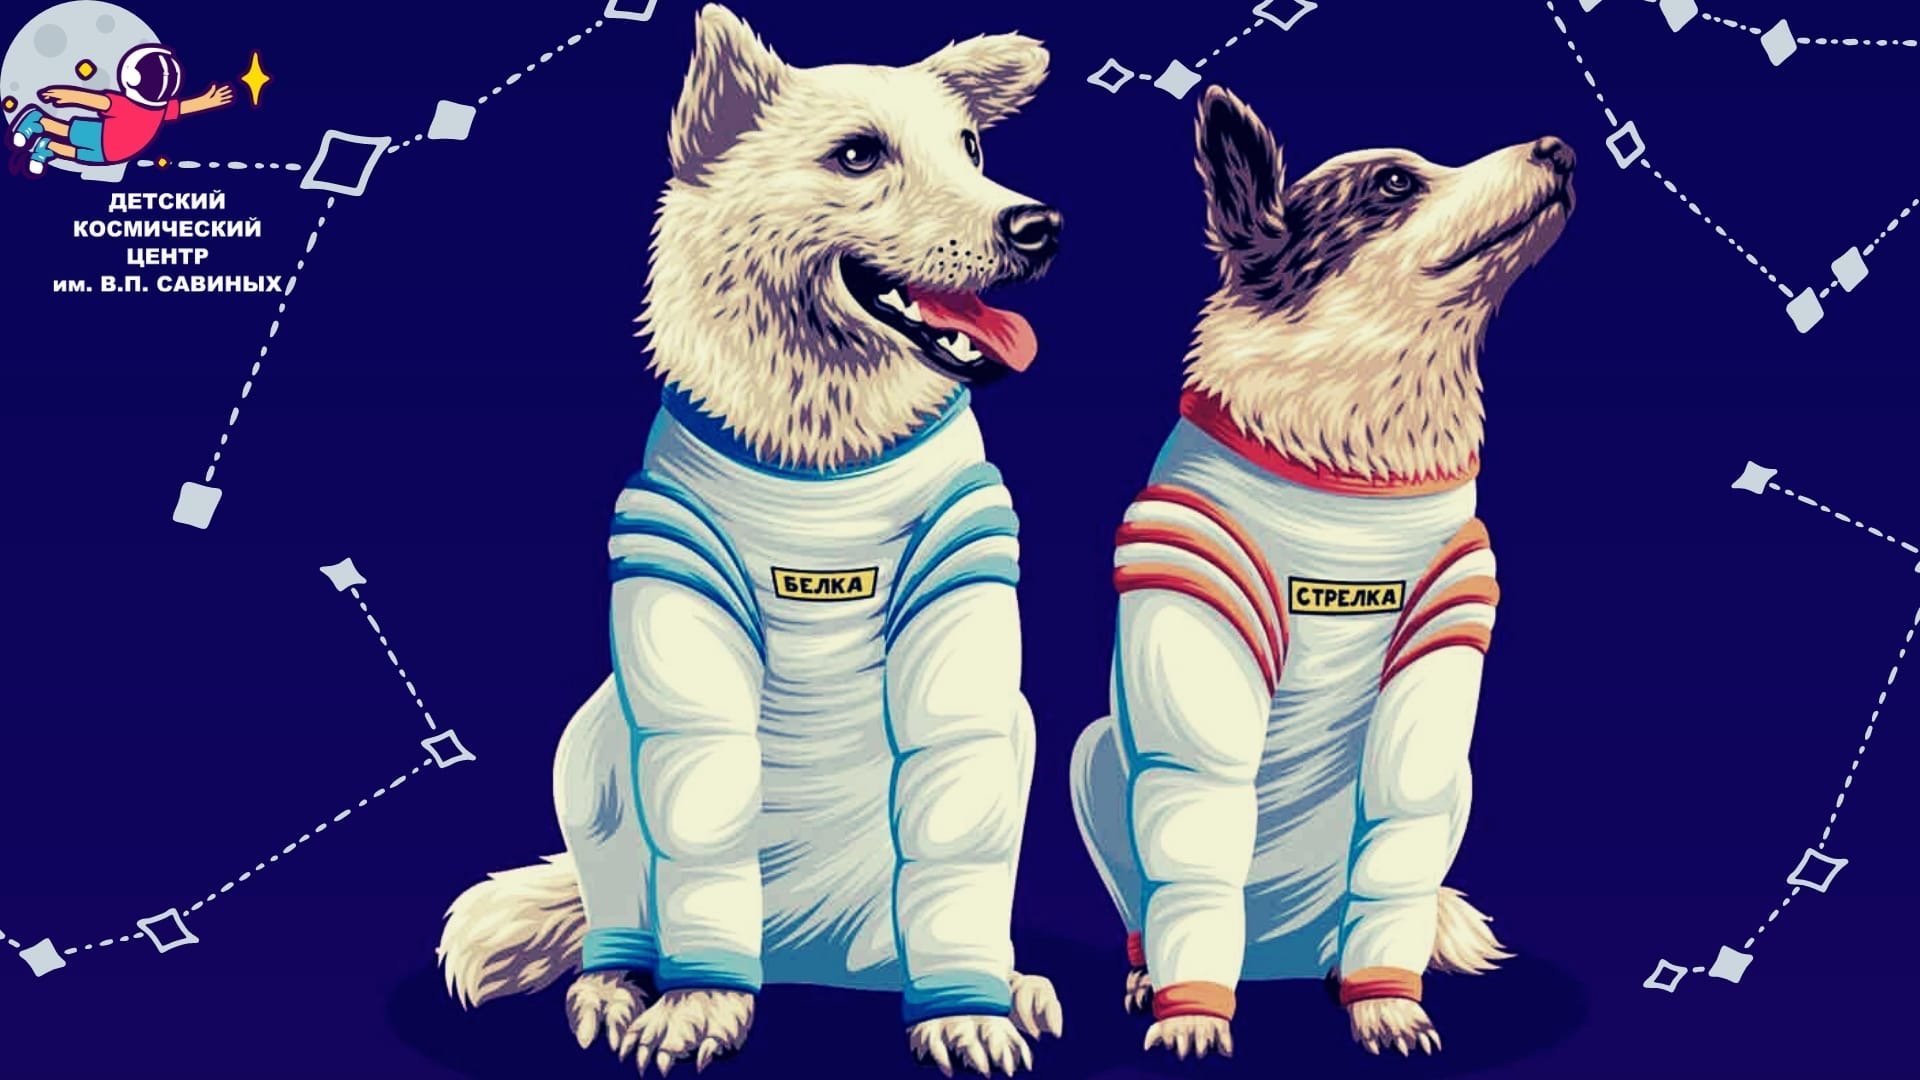 Картинка белка и стрелка в космосе. Белкаистрелка (собака-космонавт). Полет белки и стрелки в космос. Собаки-космонавты белка и стрелка-1. Собака белка и стрелка в космосе для детей.